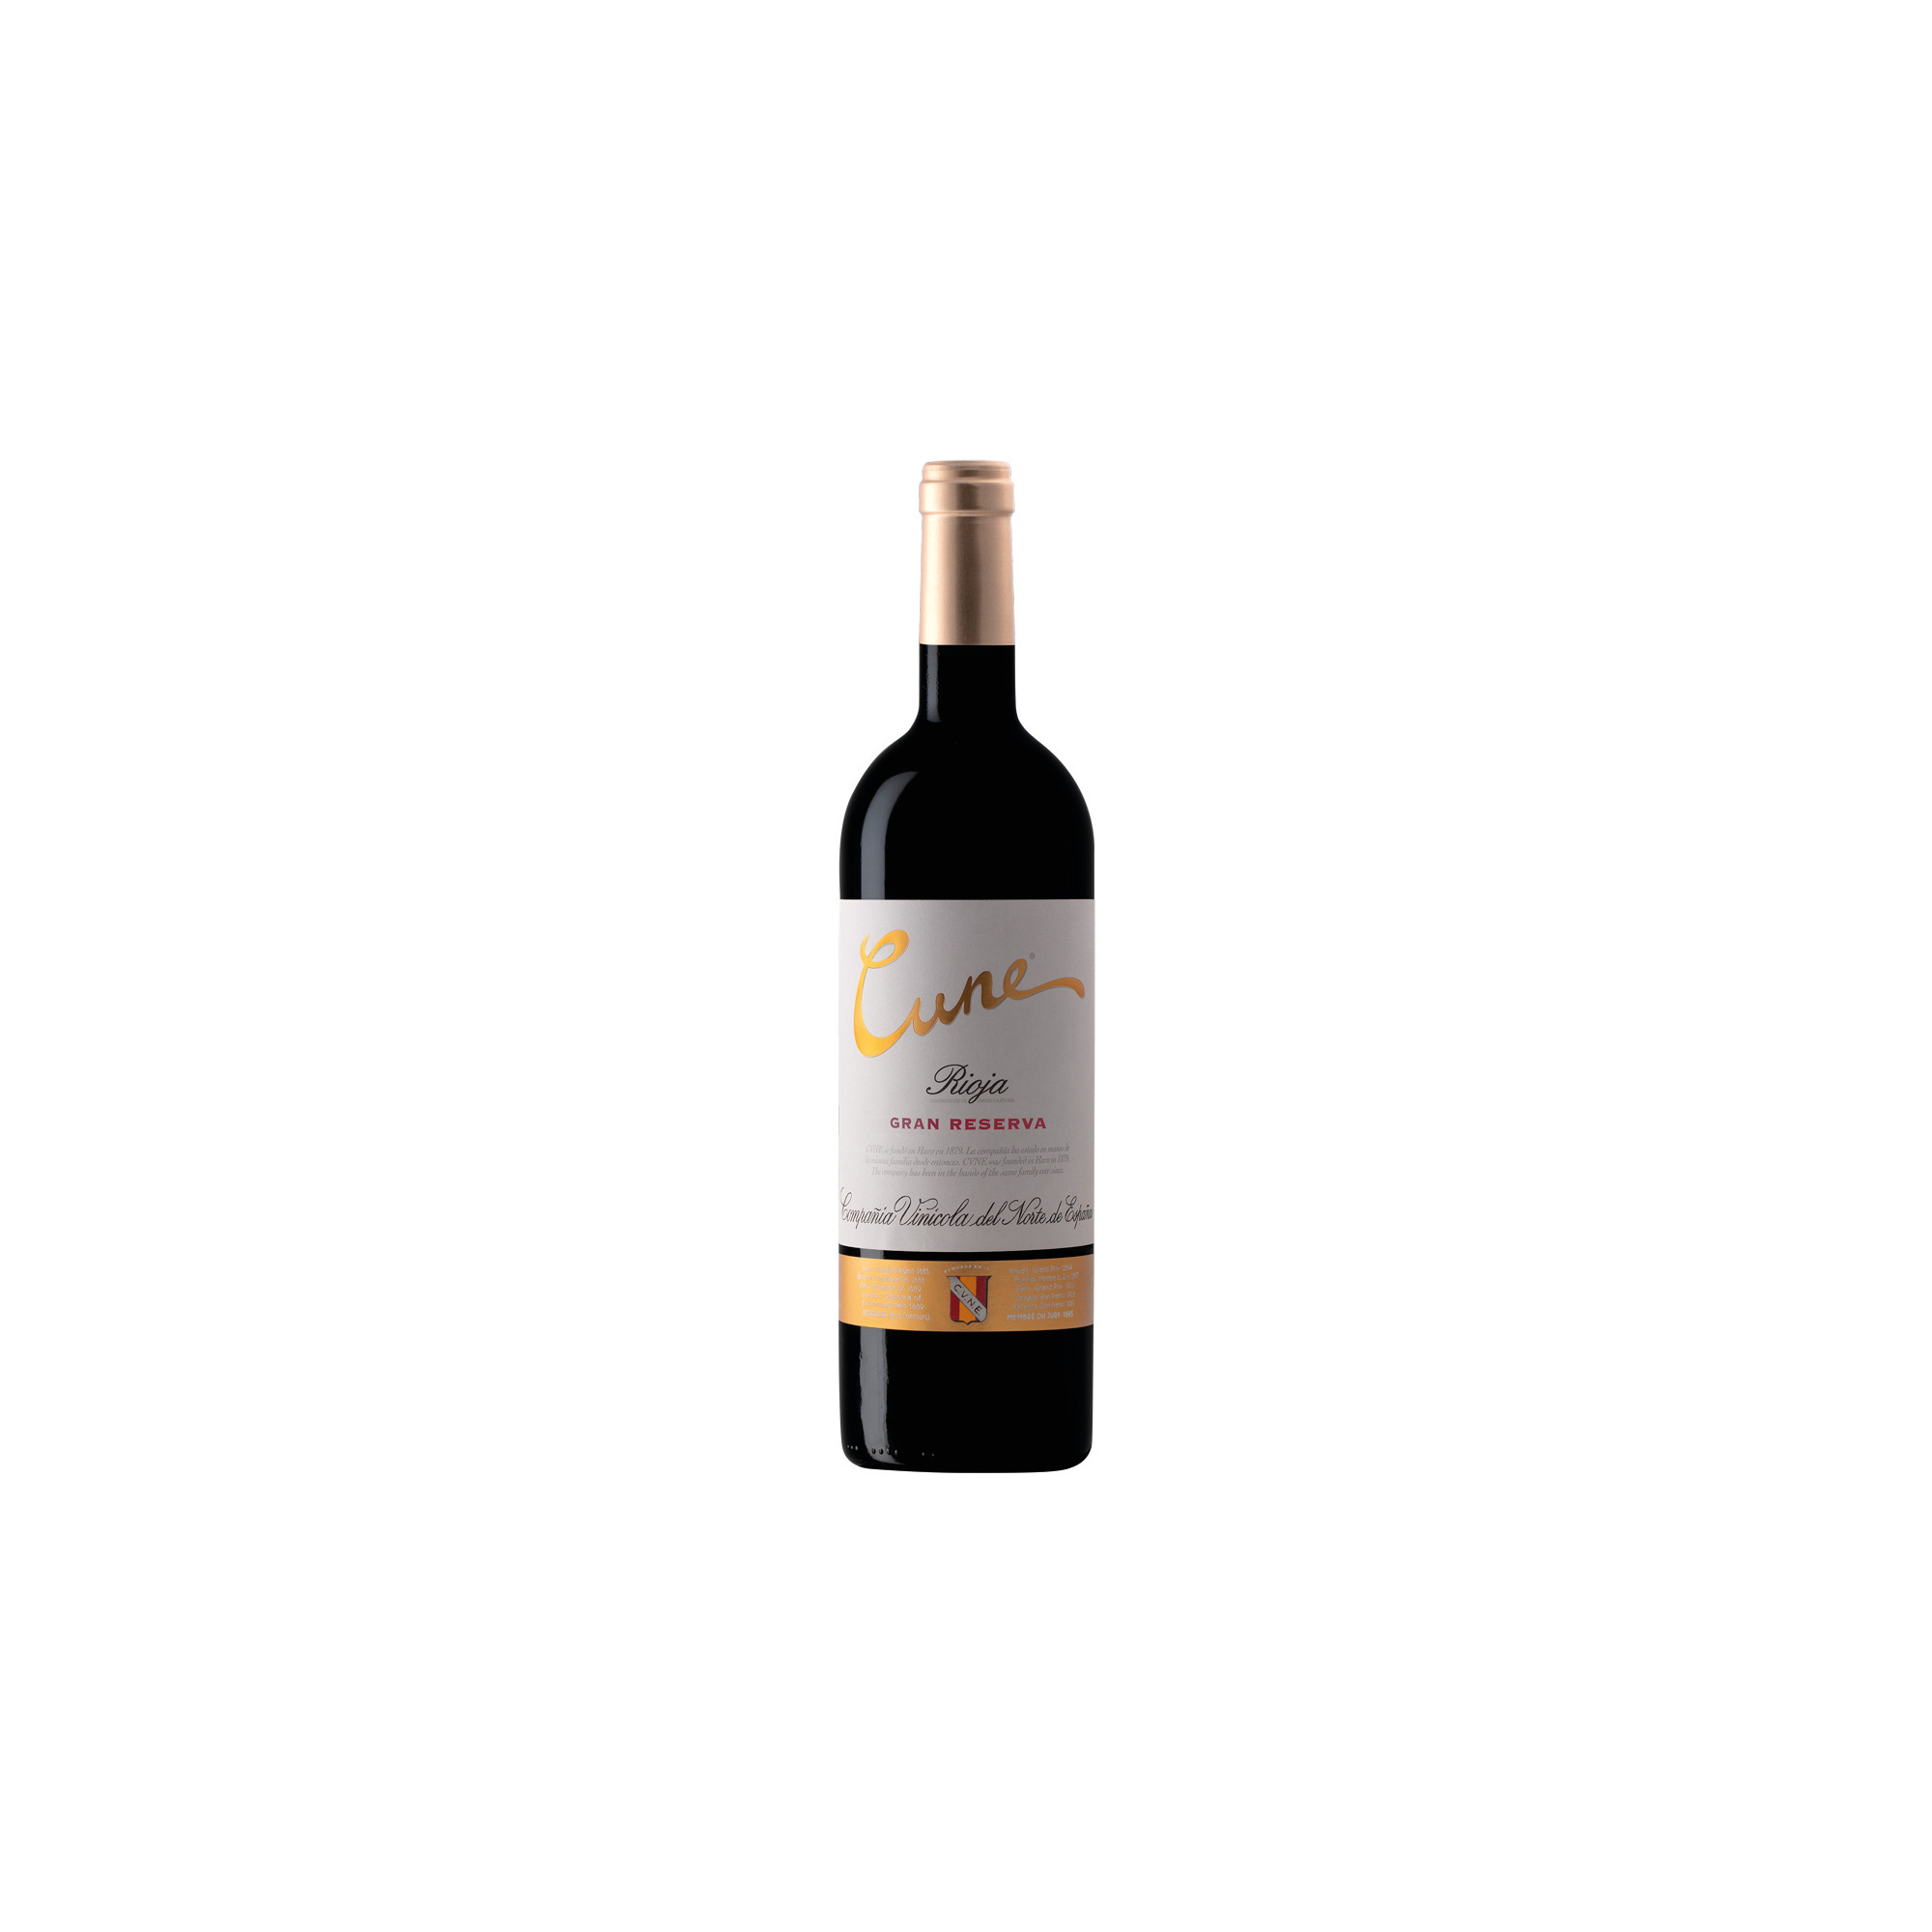 CUNE Rioja Gran Reserva 0,75l, 2017